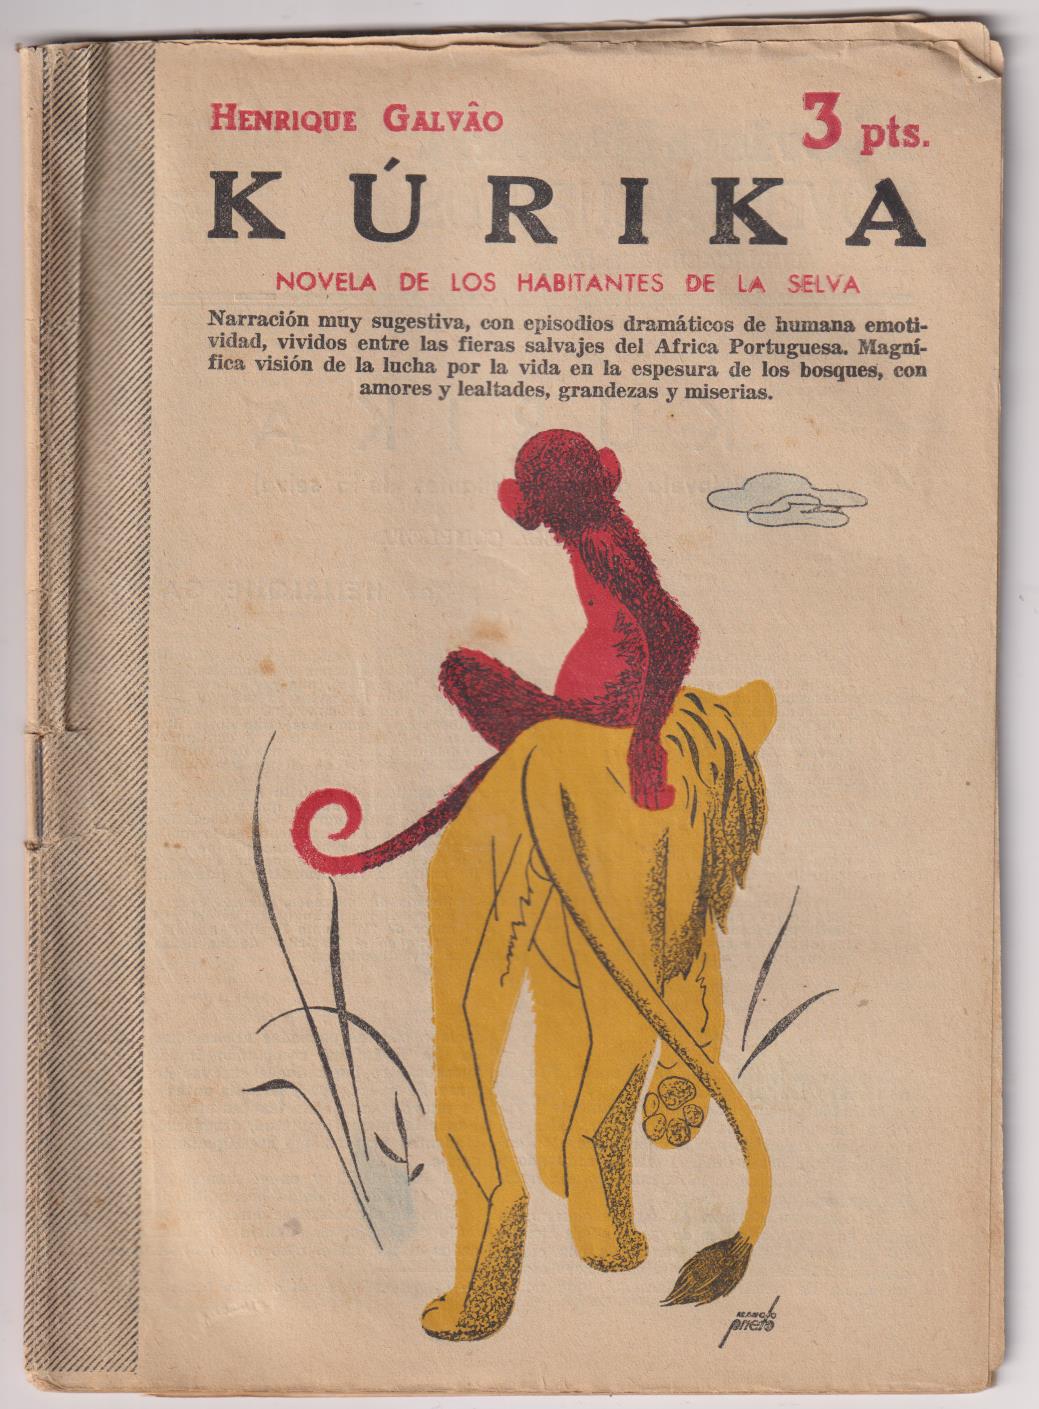 Revista Literaria Novelas y Cuentos nº 1281. Kurika por Henrique Galvao. Año 1955